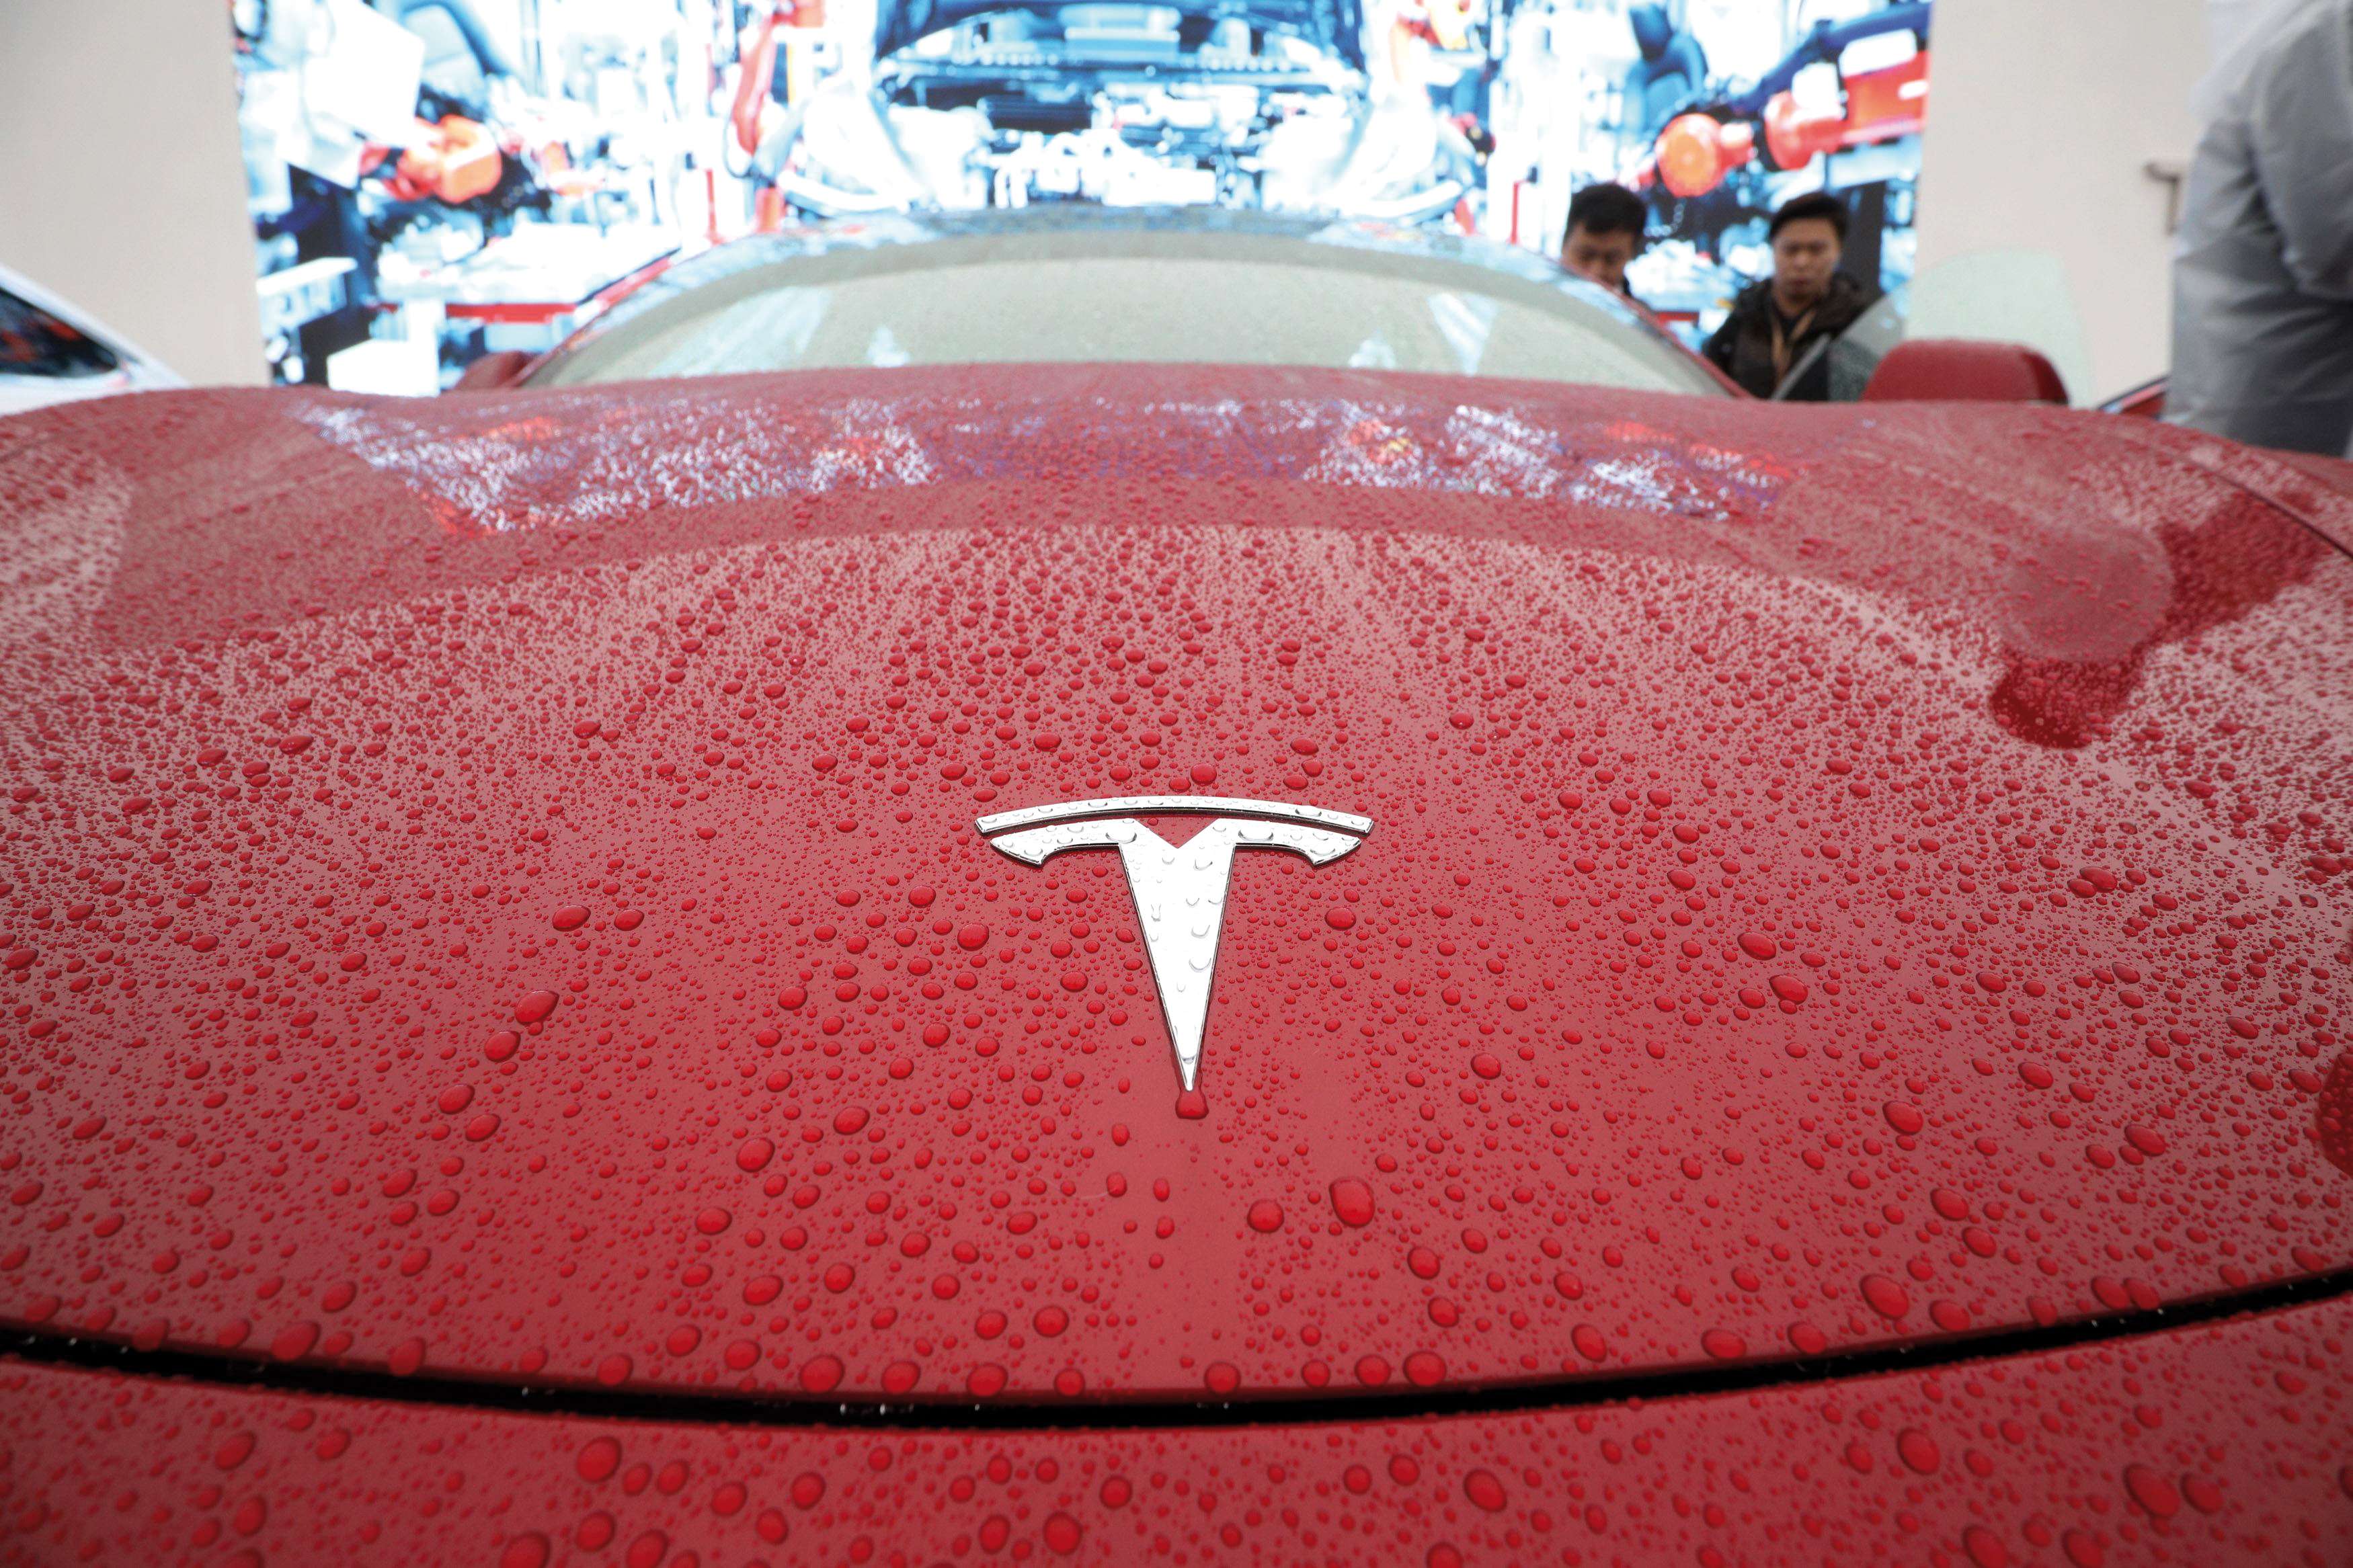 Tesla a livrat aproape 1 milion de maşini în 2021, cu 87% mai mult faţă de 2020. T4/2021, al şaselea trimestru consecutiv de livrări record